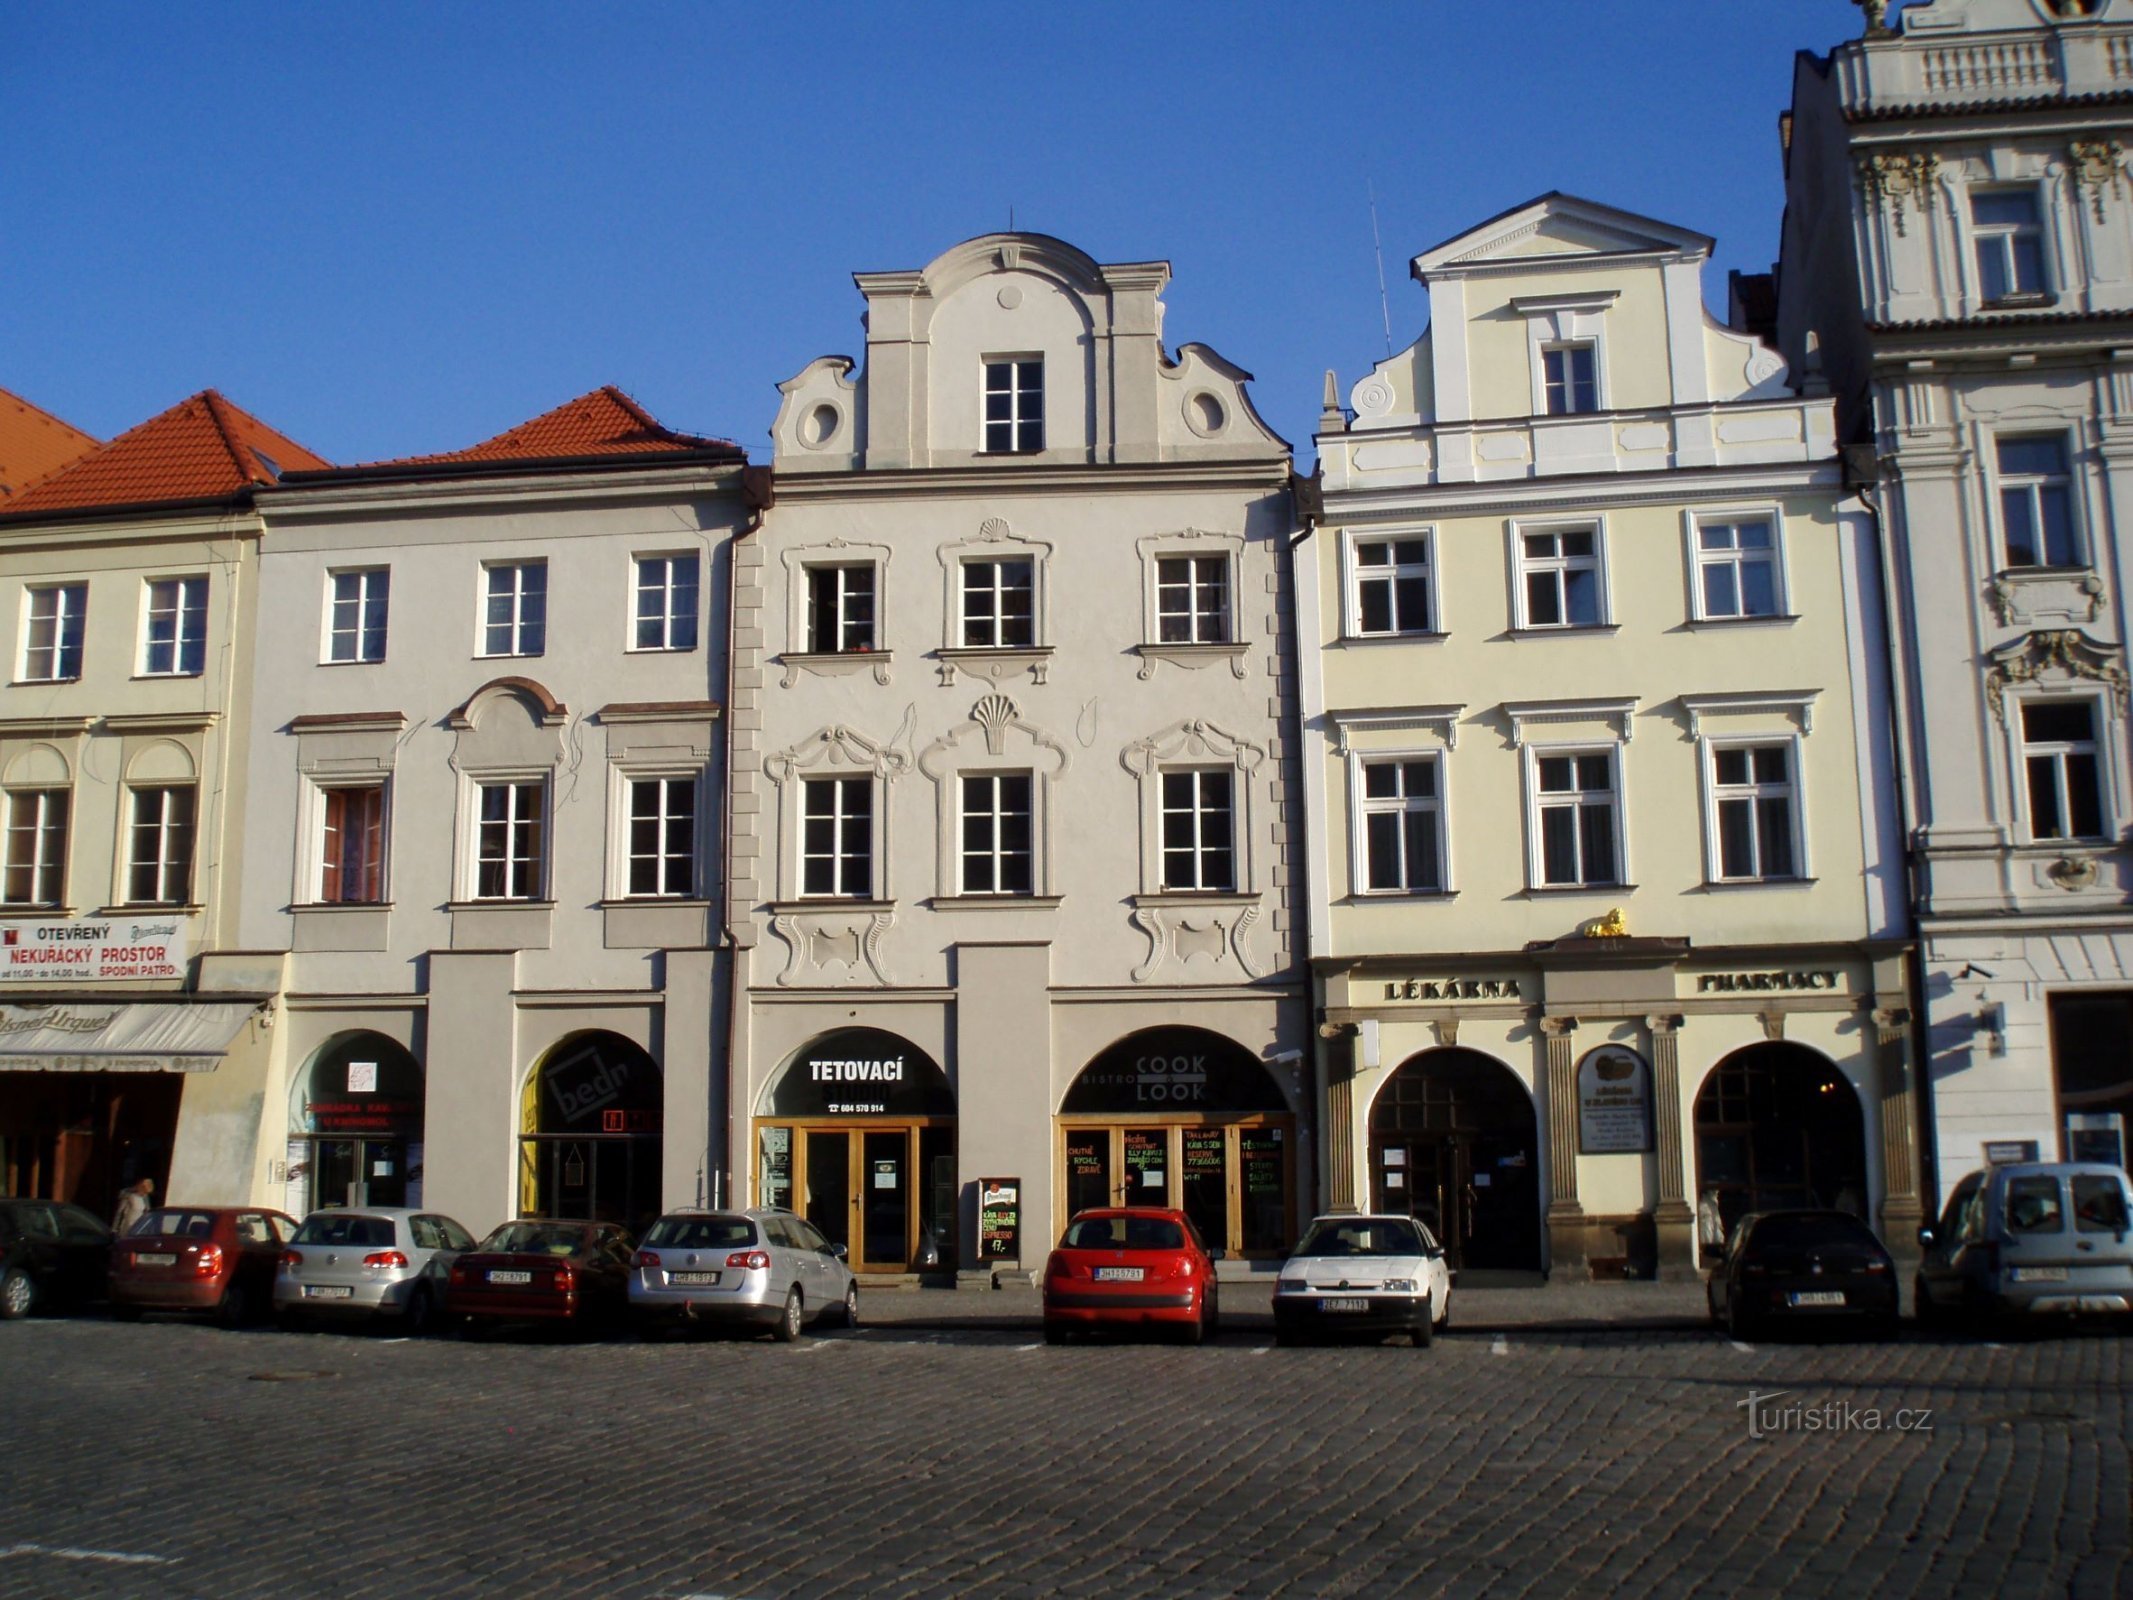 Velké náměstí No. 27-29 (Hradec Králové, 9.4.2012/XNUMX/XNUMX)